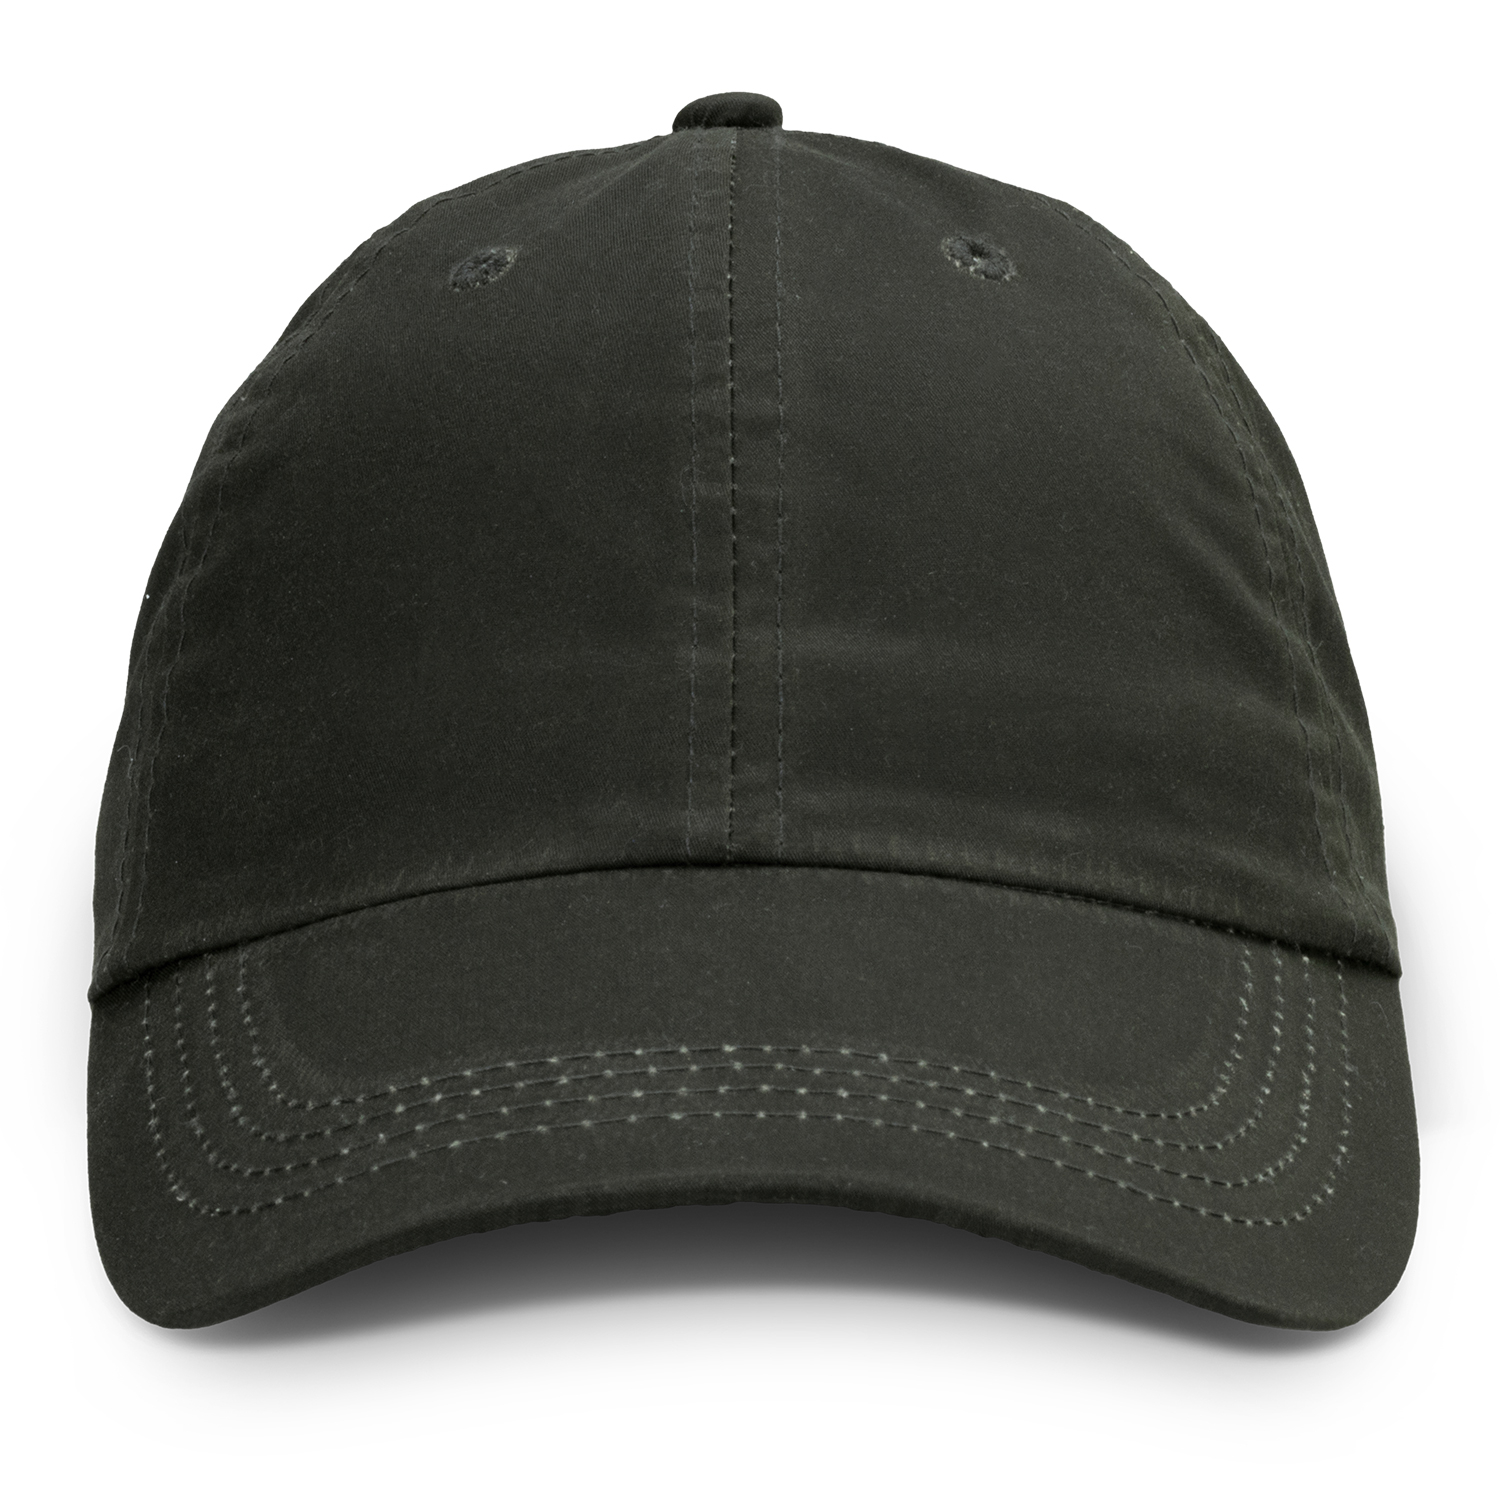 Caps Oilskin Cap cap